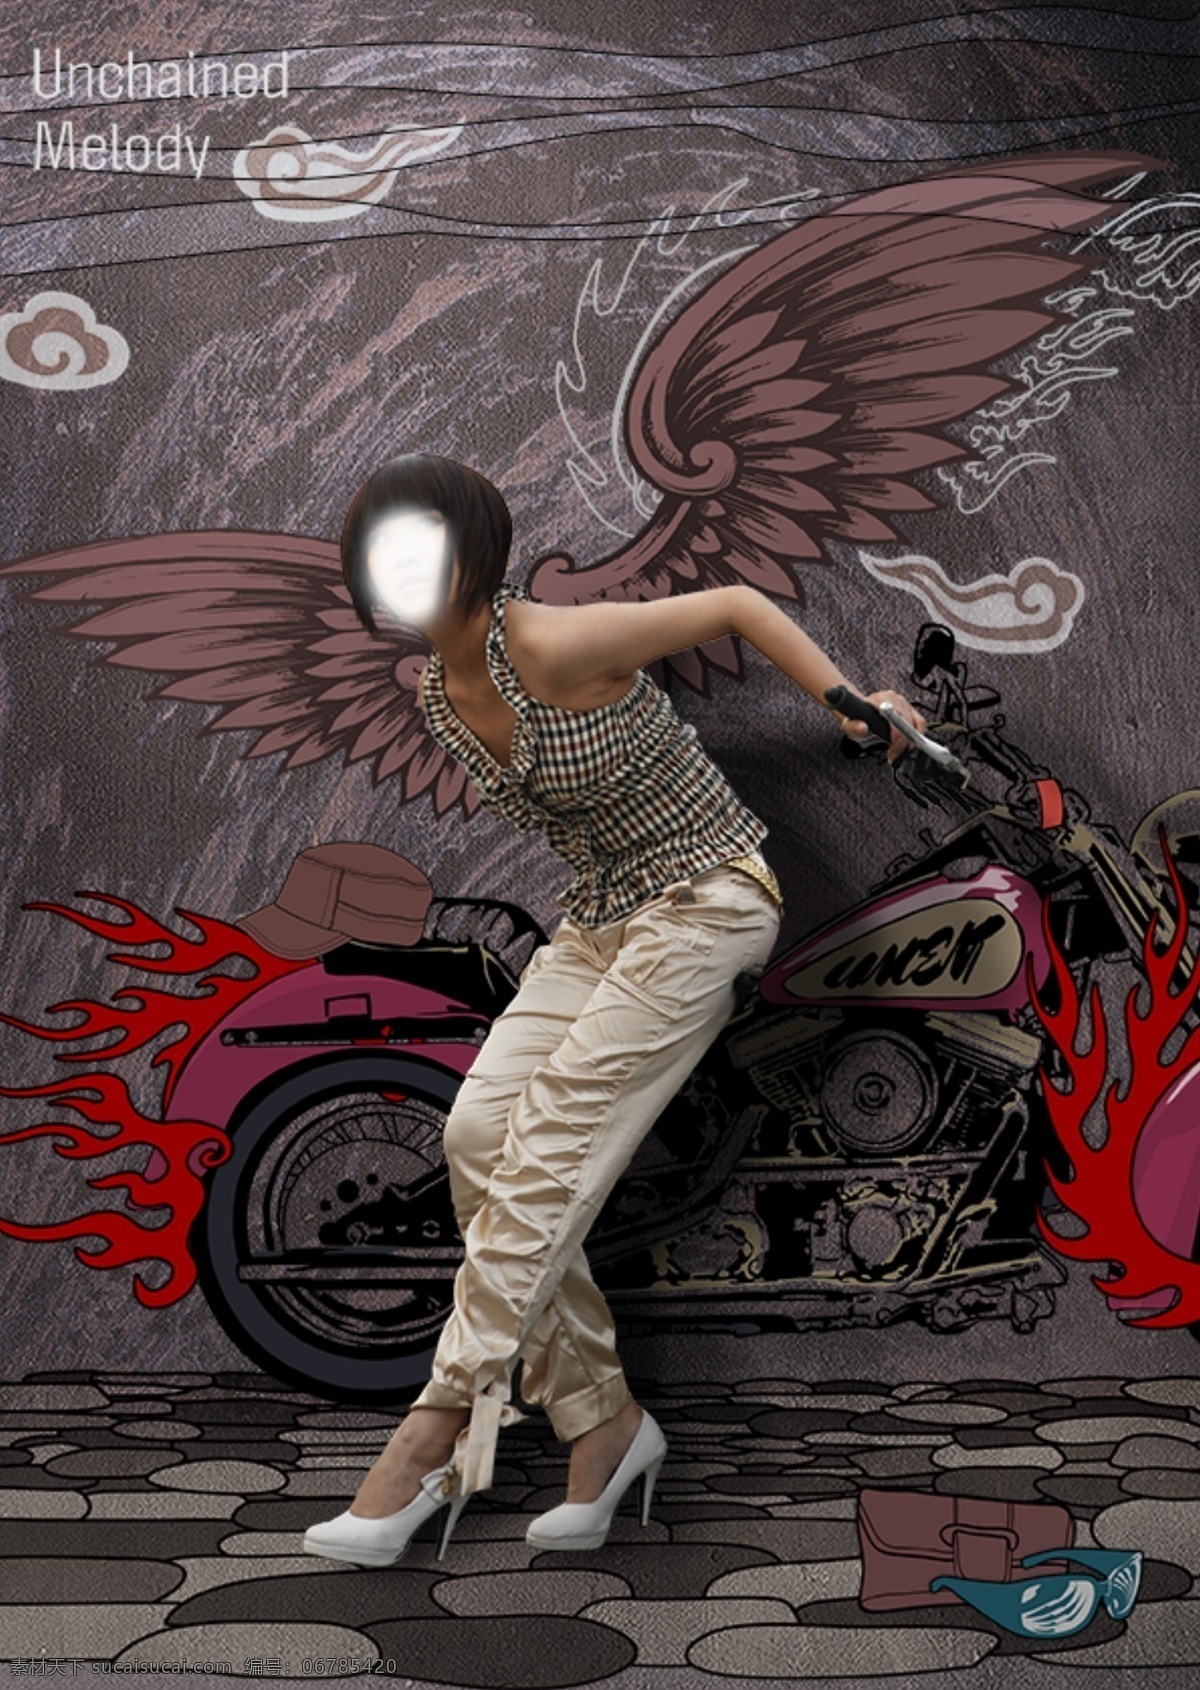 机车 时尚 插画 翅膀 模特 摩托车 手绘风格 风火轮 psd源文件